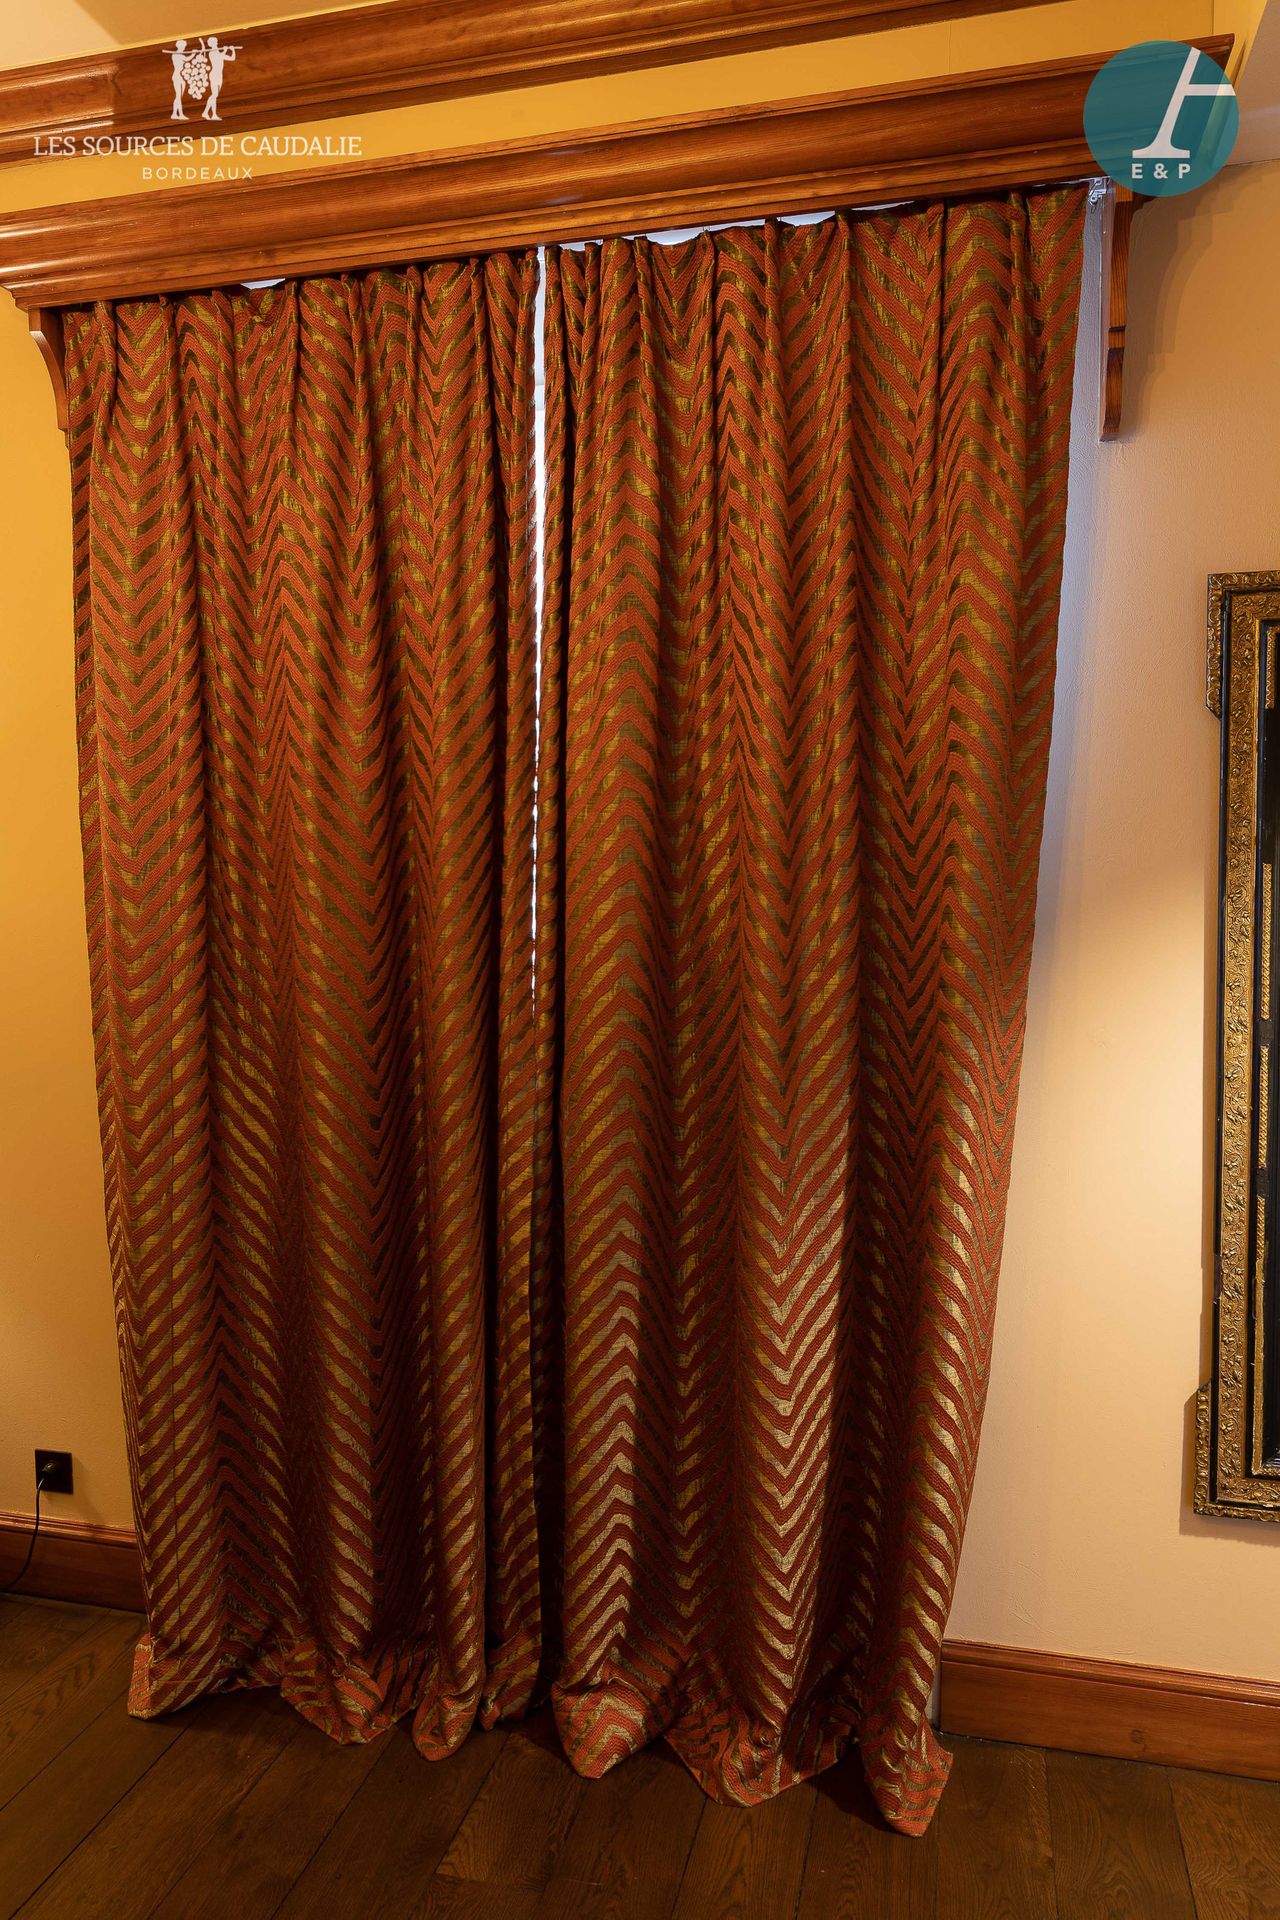 Null Aus dem Zimmer Nr. 14 "Thomas Jefferson".

Zwei Paar Vorhänge, mit ihren Ve&hellip;